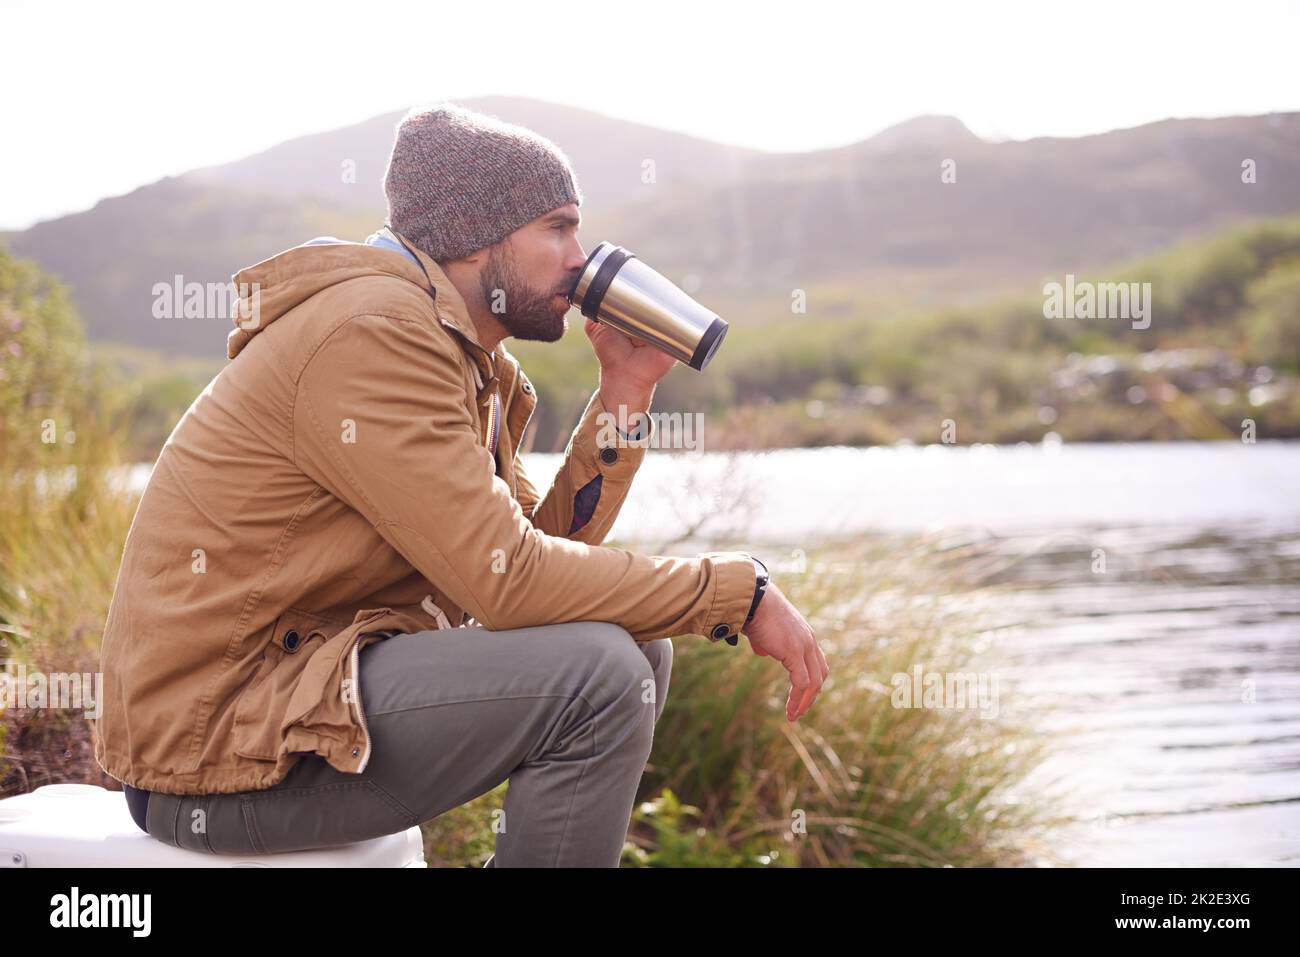 Genießen Sie die Landschaft. Aufnahme eines hübschen Mannes, der an einem See sitzt und aus einer Thermoskanne trinkt. Stockfoto